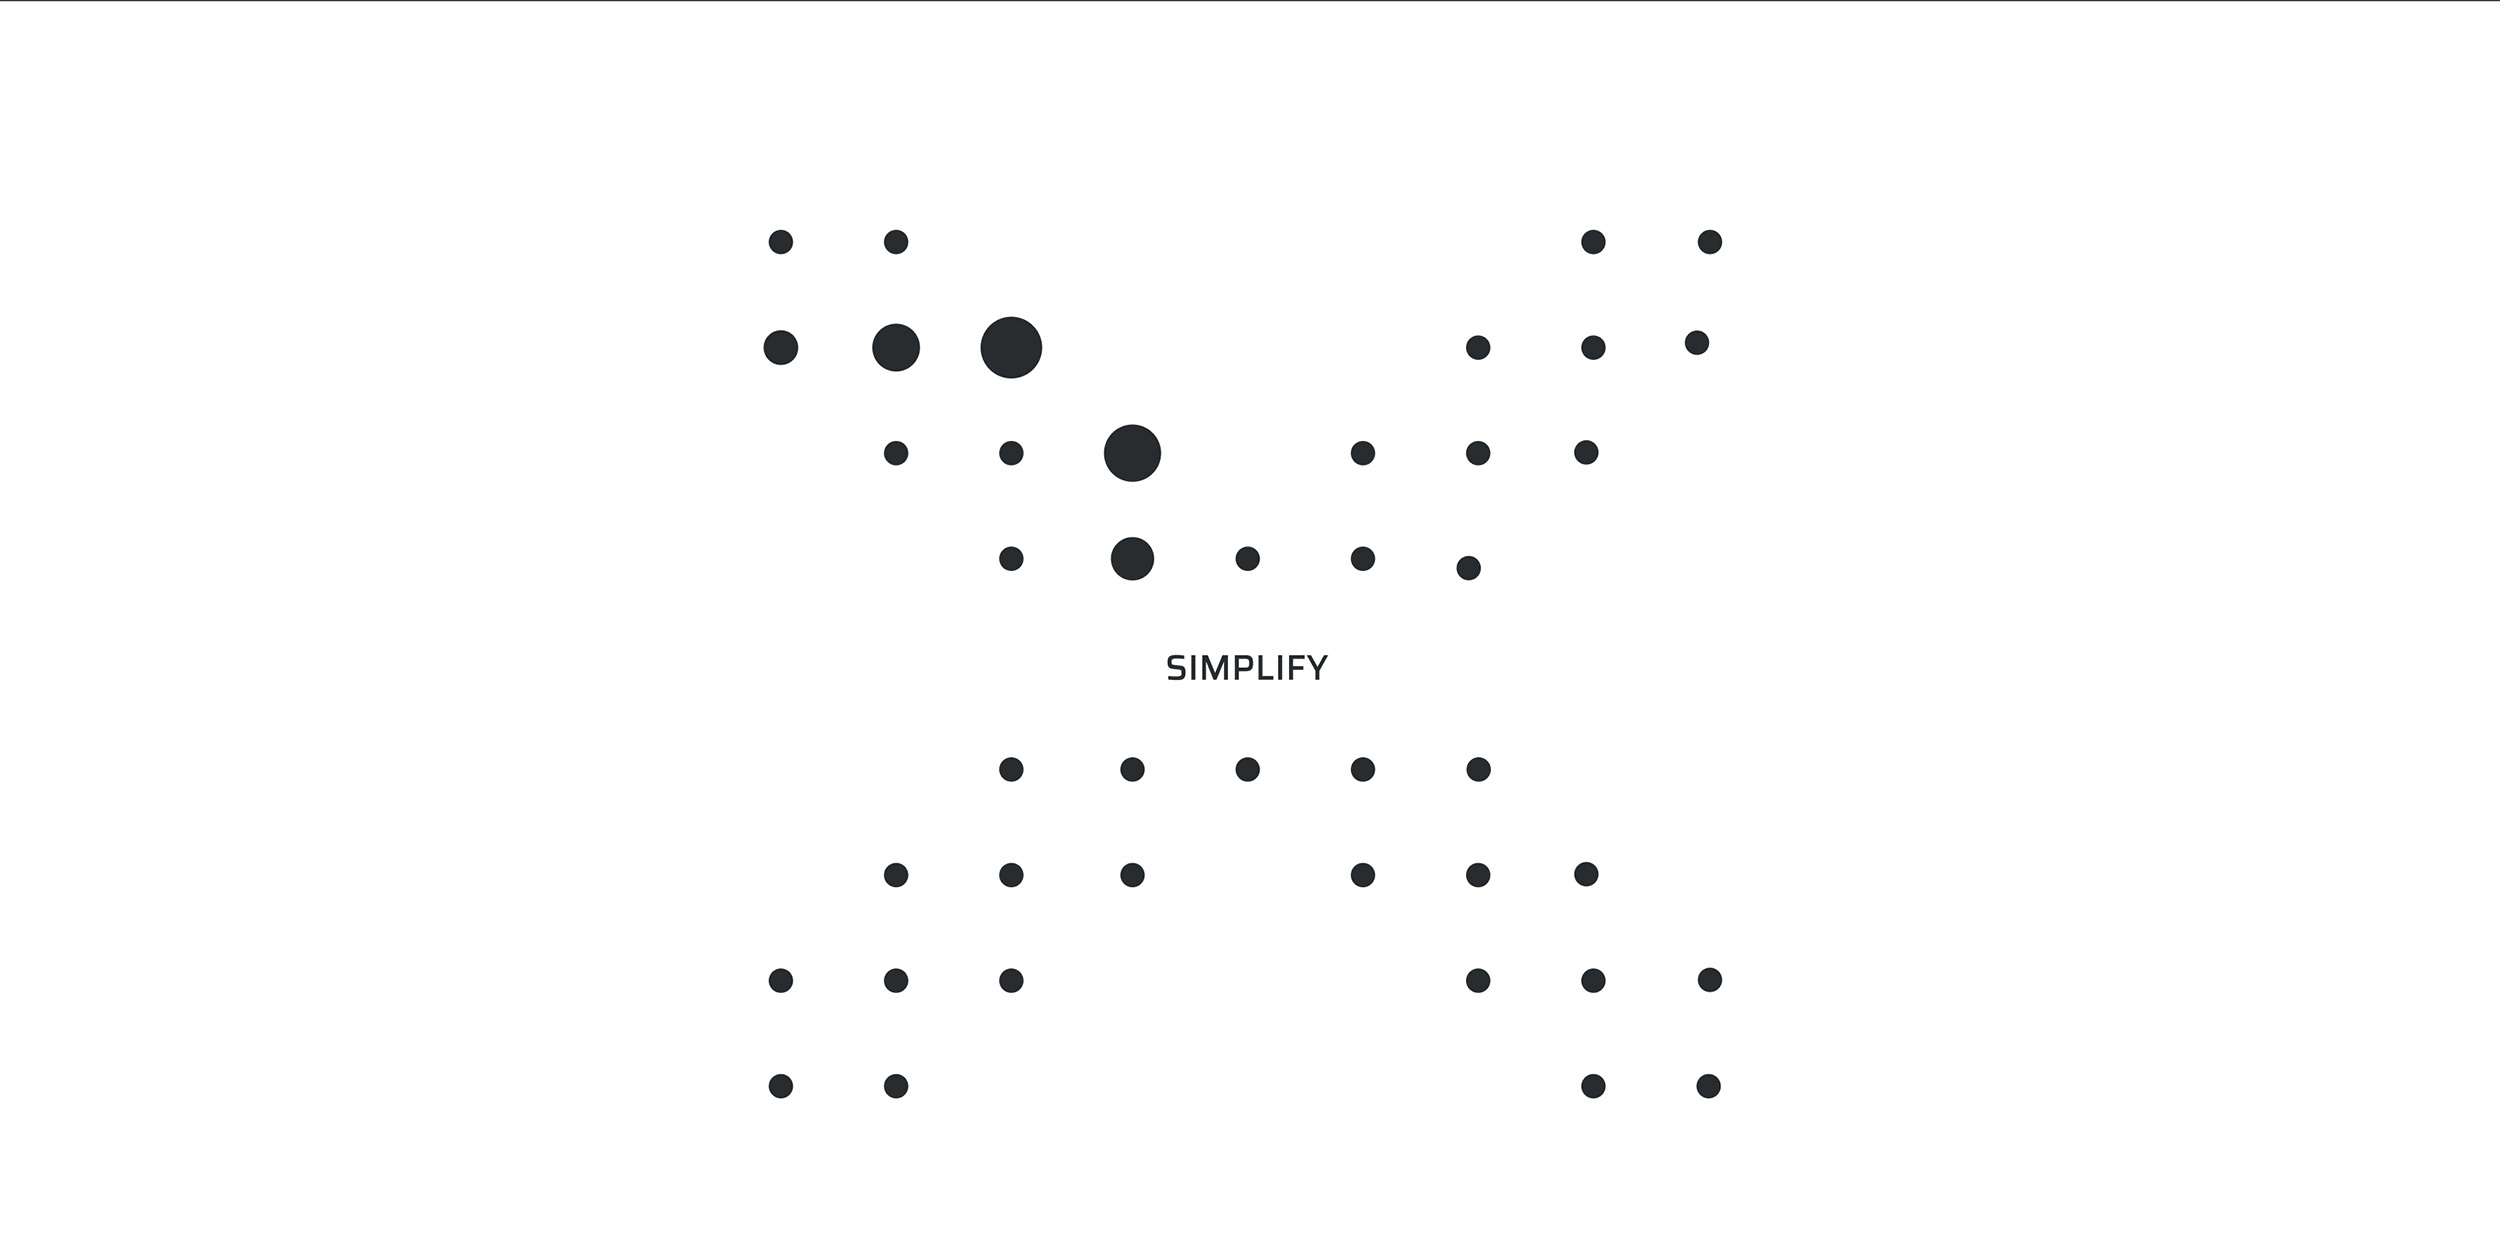 Punktemuster bildet ein X, in der Mitte steht das Wort simplify